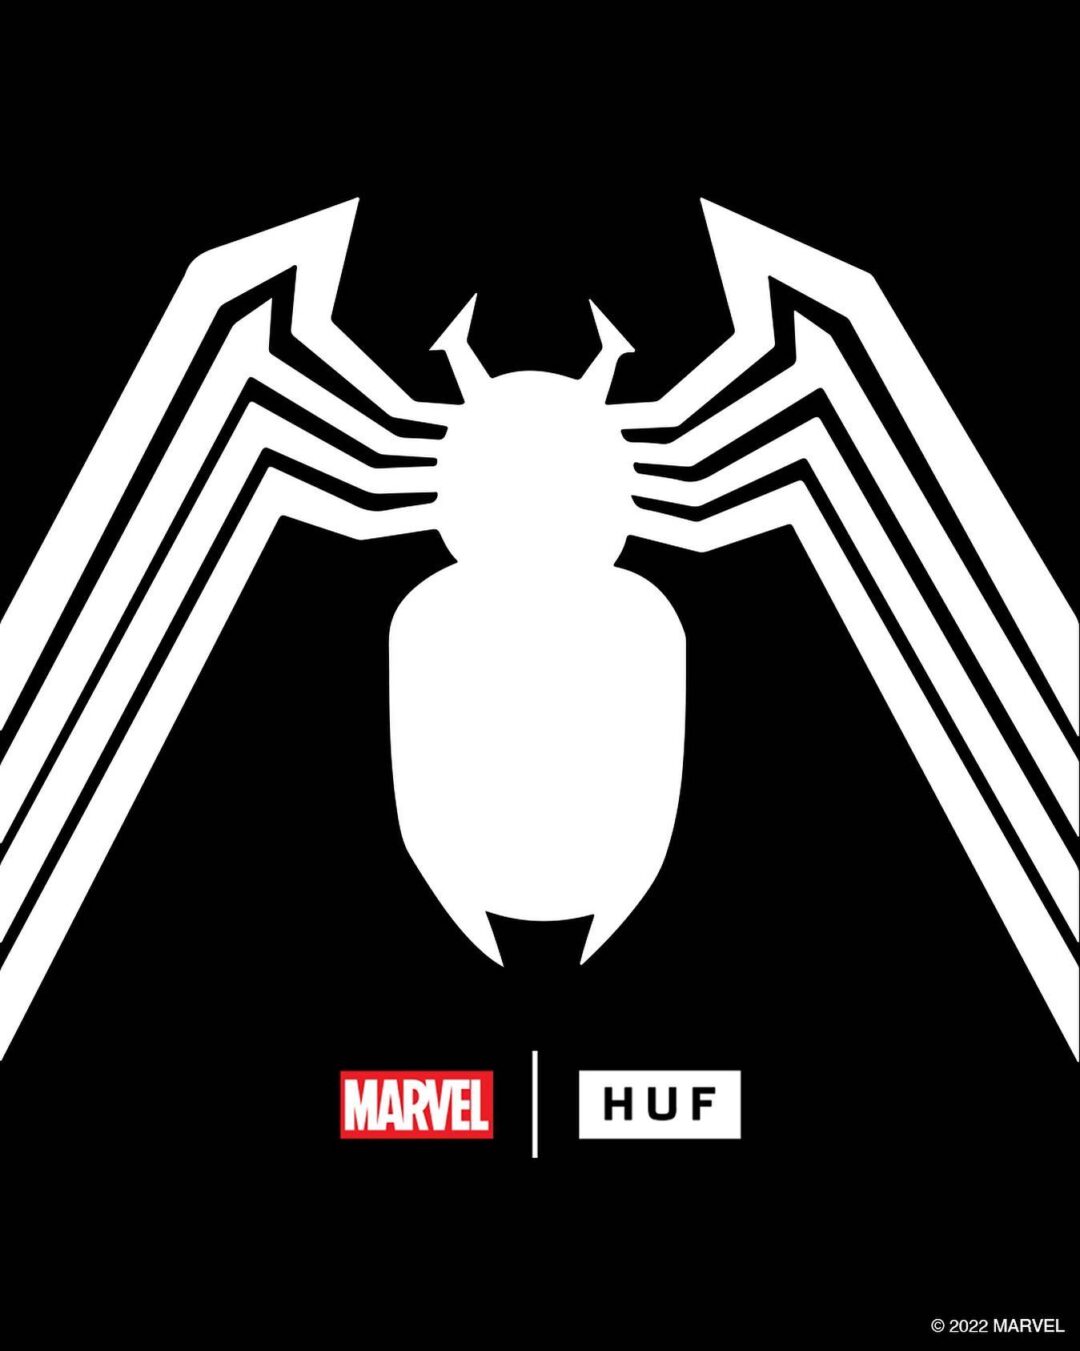 HUF × MARVEL 「SPDERMAN COLLECTION」が11/25 発売 (ハフ マーベル スパイダーマン コレクション)